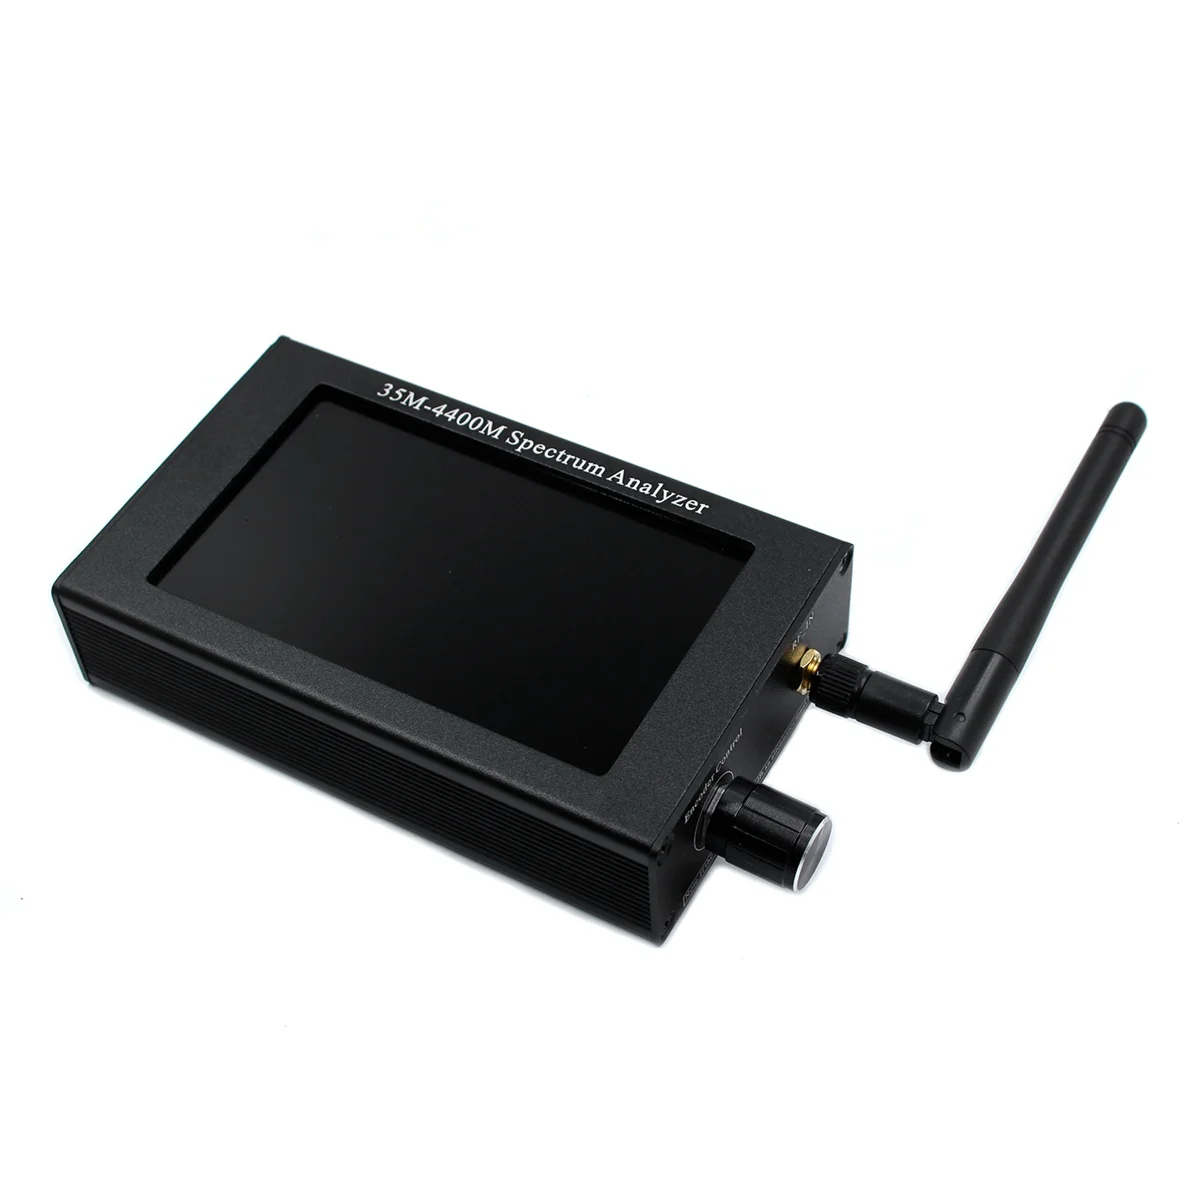 

35M-4400MHz Spectrum Analyzer 4.3Inch LCD Screen Professional Handheld Spectrum Analyzer Measurement Interphone Signal